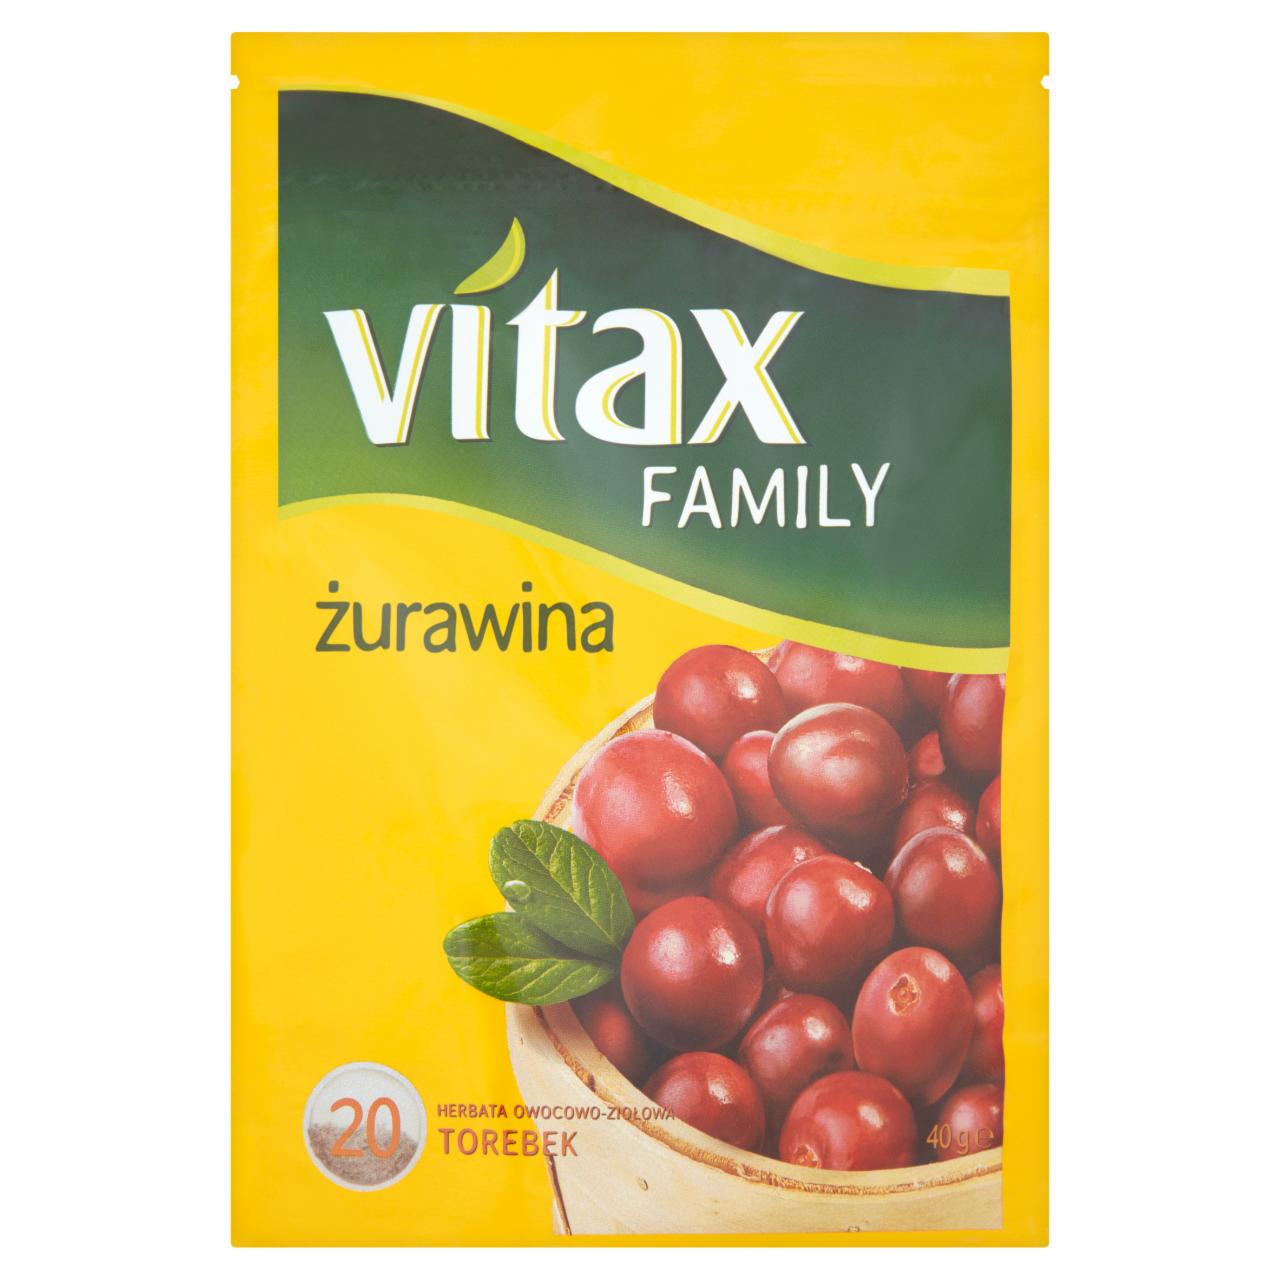 Zdjęcia - Vitax Family żurawina Herbata owocowo-ziołowa 40 g (20 torebek)